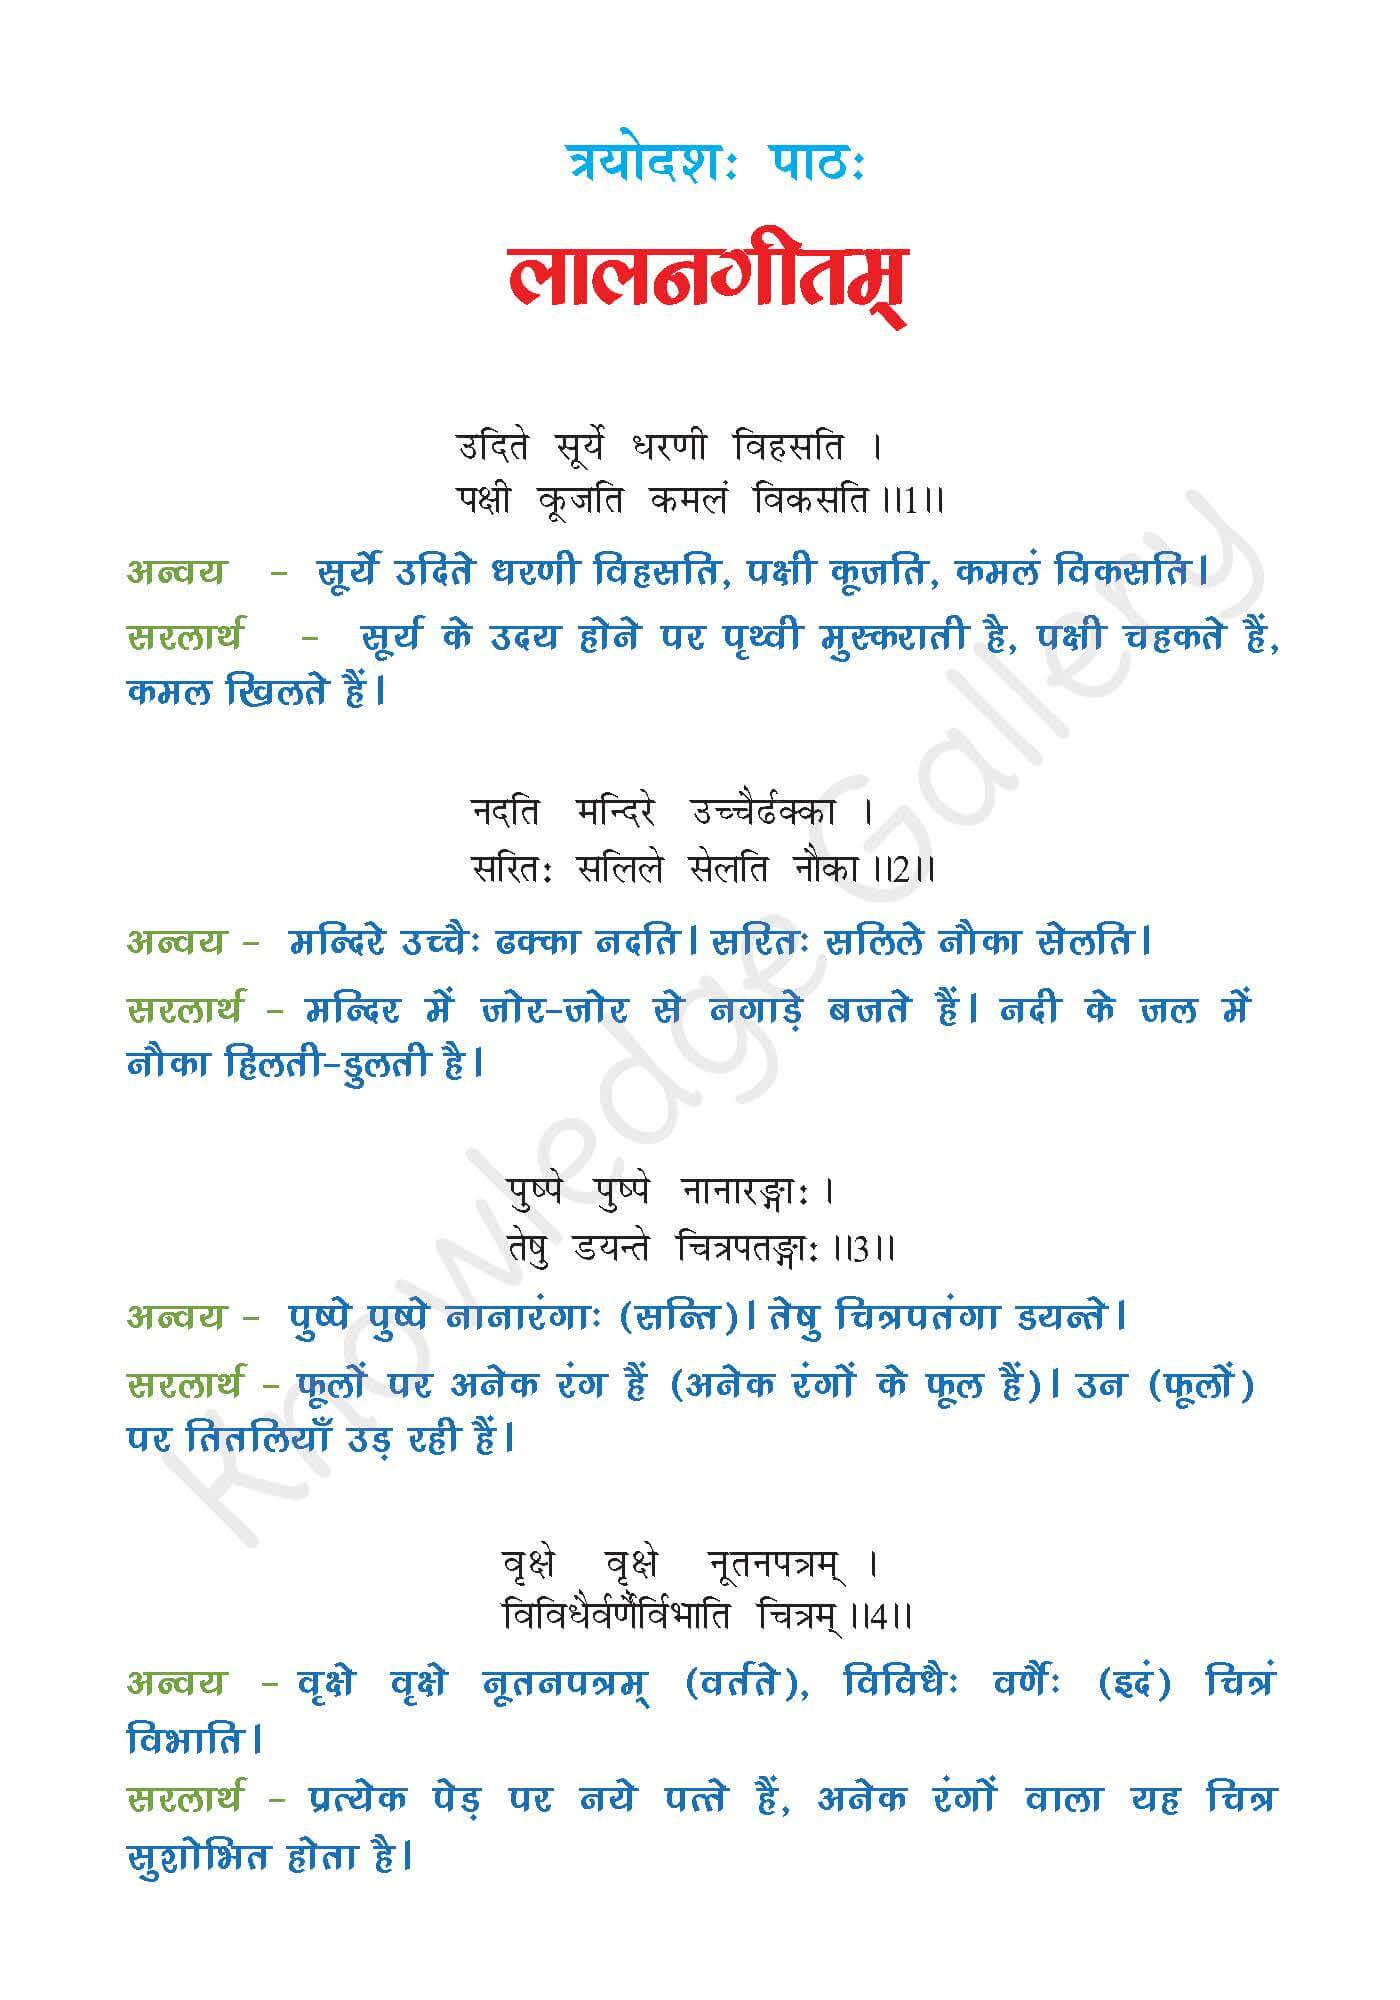 NCERT Solution For Class 7 Sanskrit Chapter 13 part 1